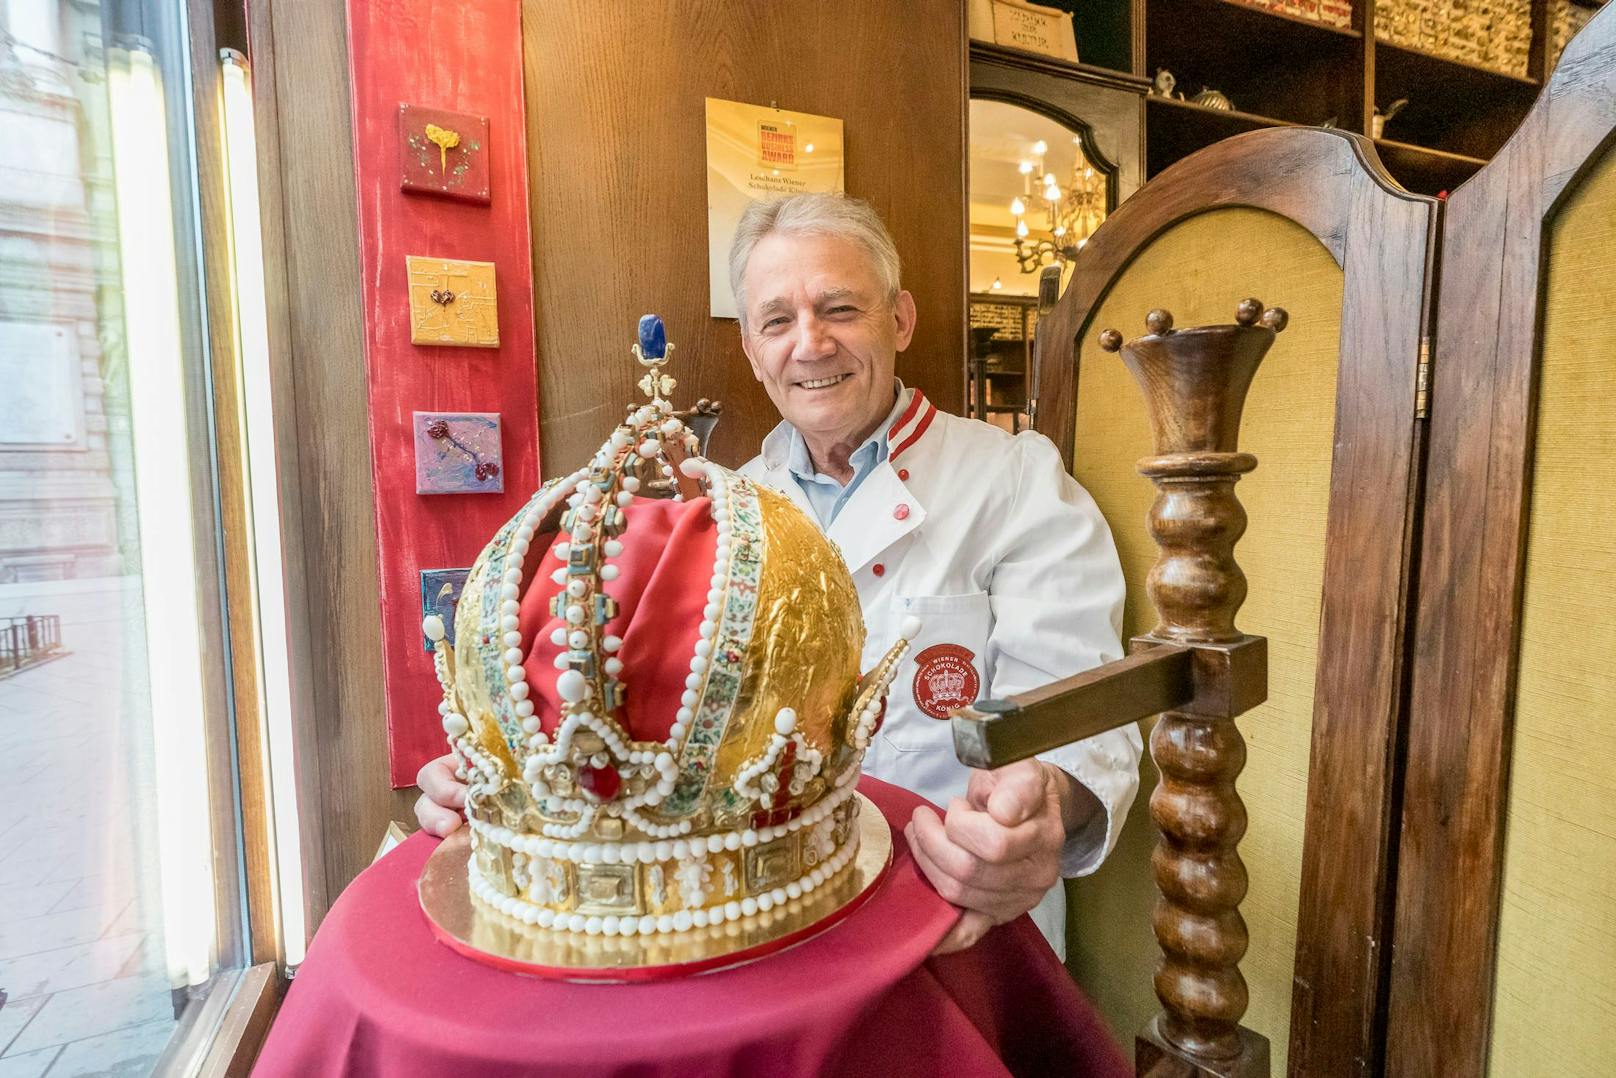 Wiens Schokolade-König Wolfgang Leschanz baute die Kaiserkrone aus viel Schokolade, Marzipan, Zuckerkristallen und Blattgold nach.